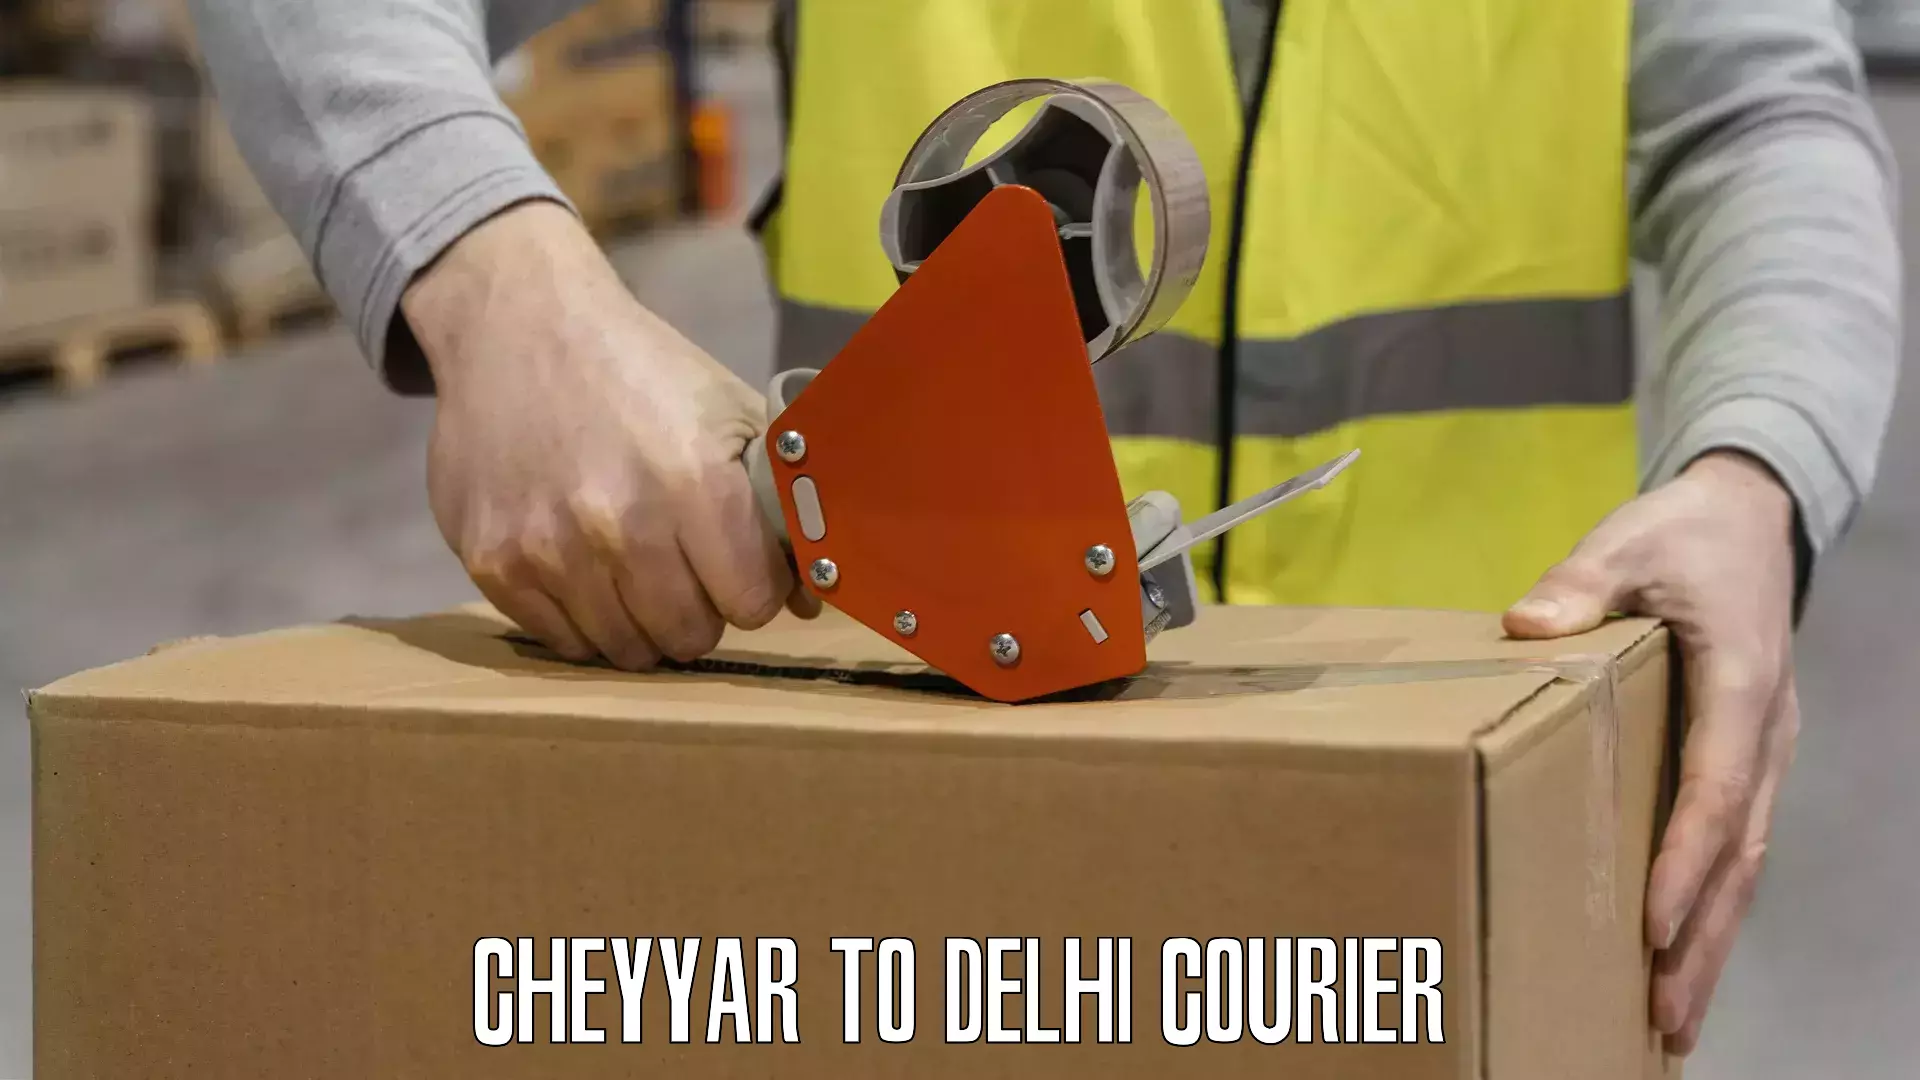 24/7 courier service Cheyyar to Delhi